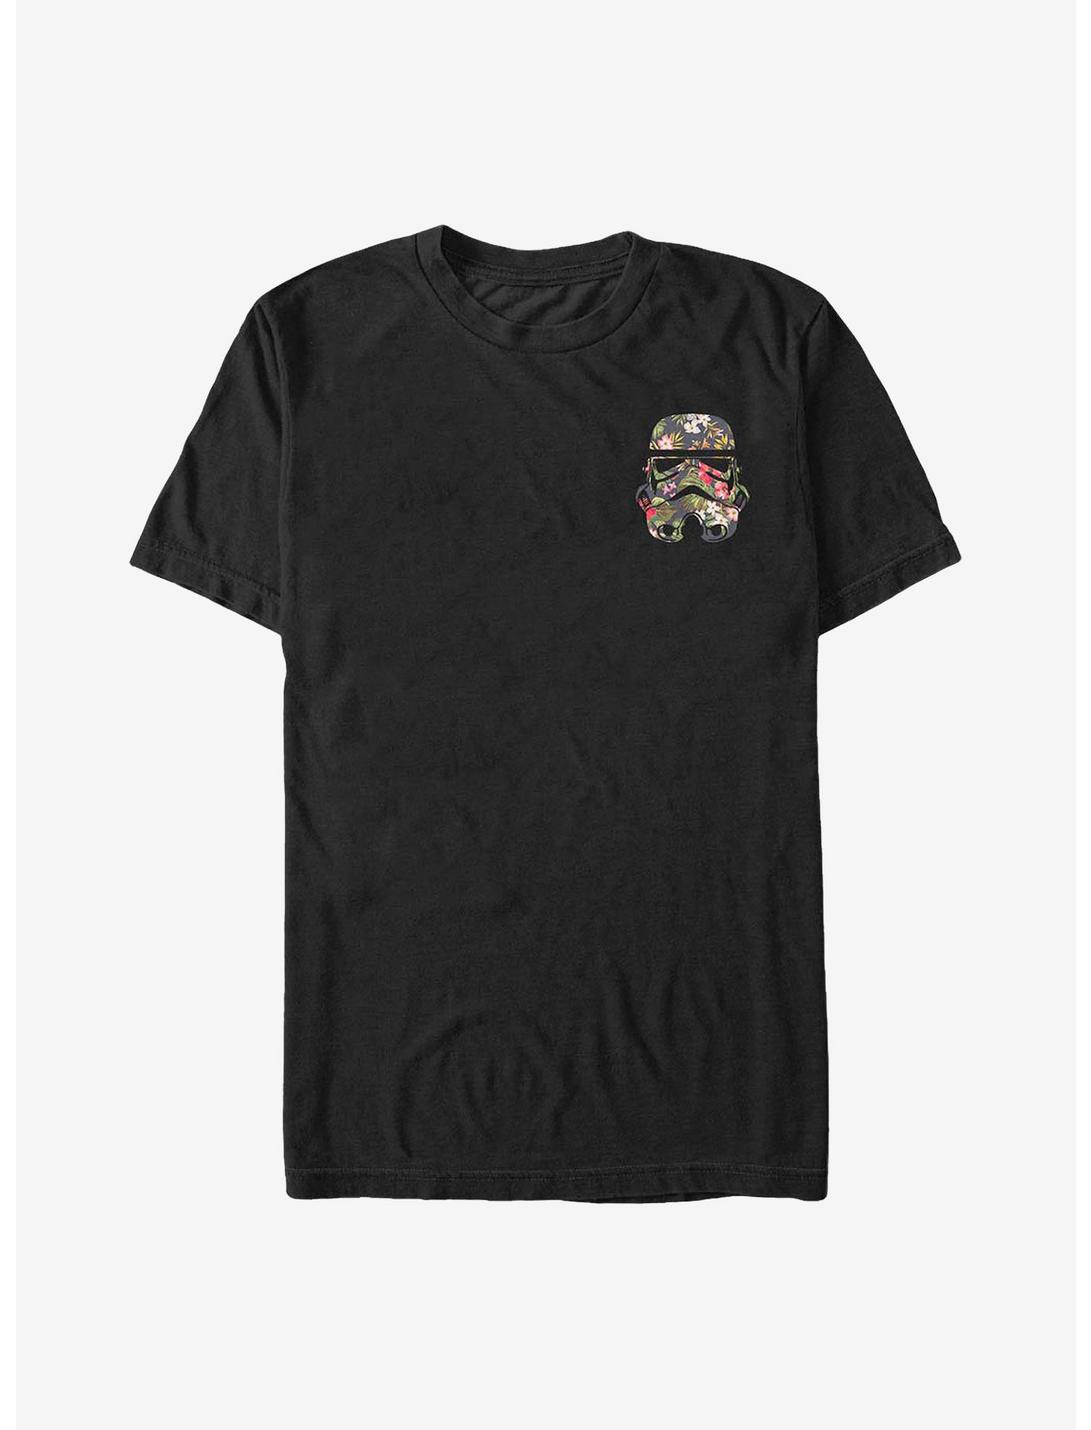 Star Wars Floral Badge Trooper T-Shirt, BLACK, hi-res